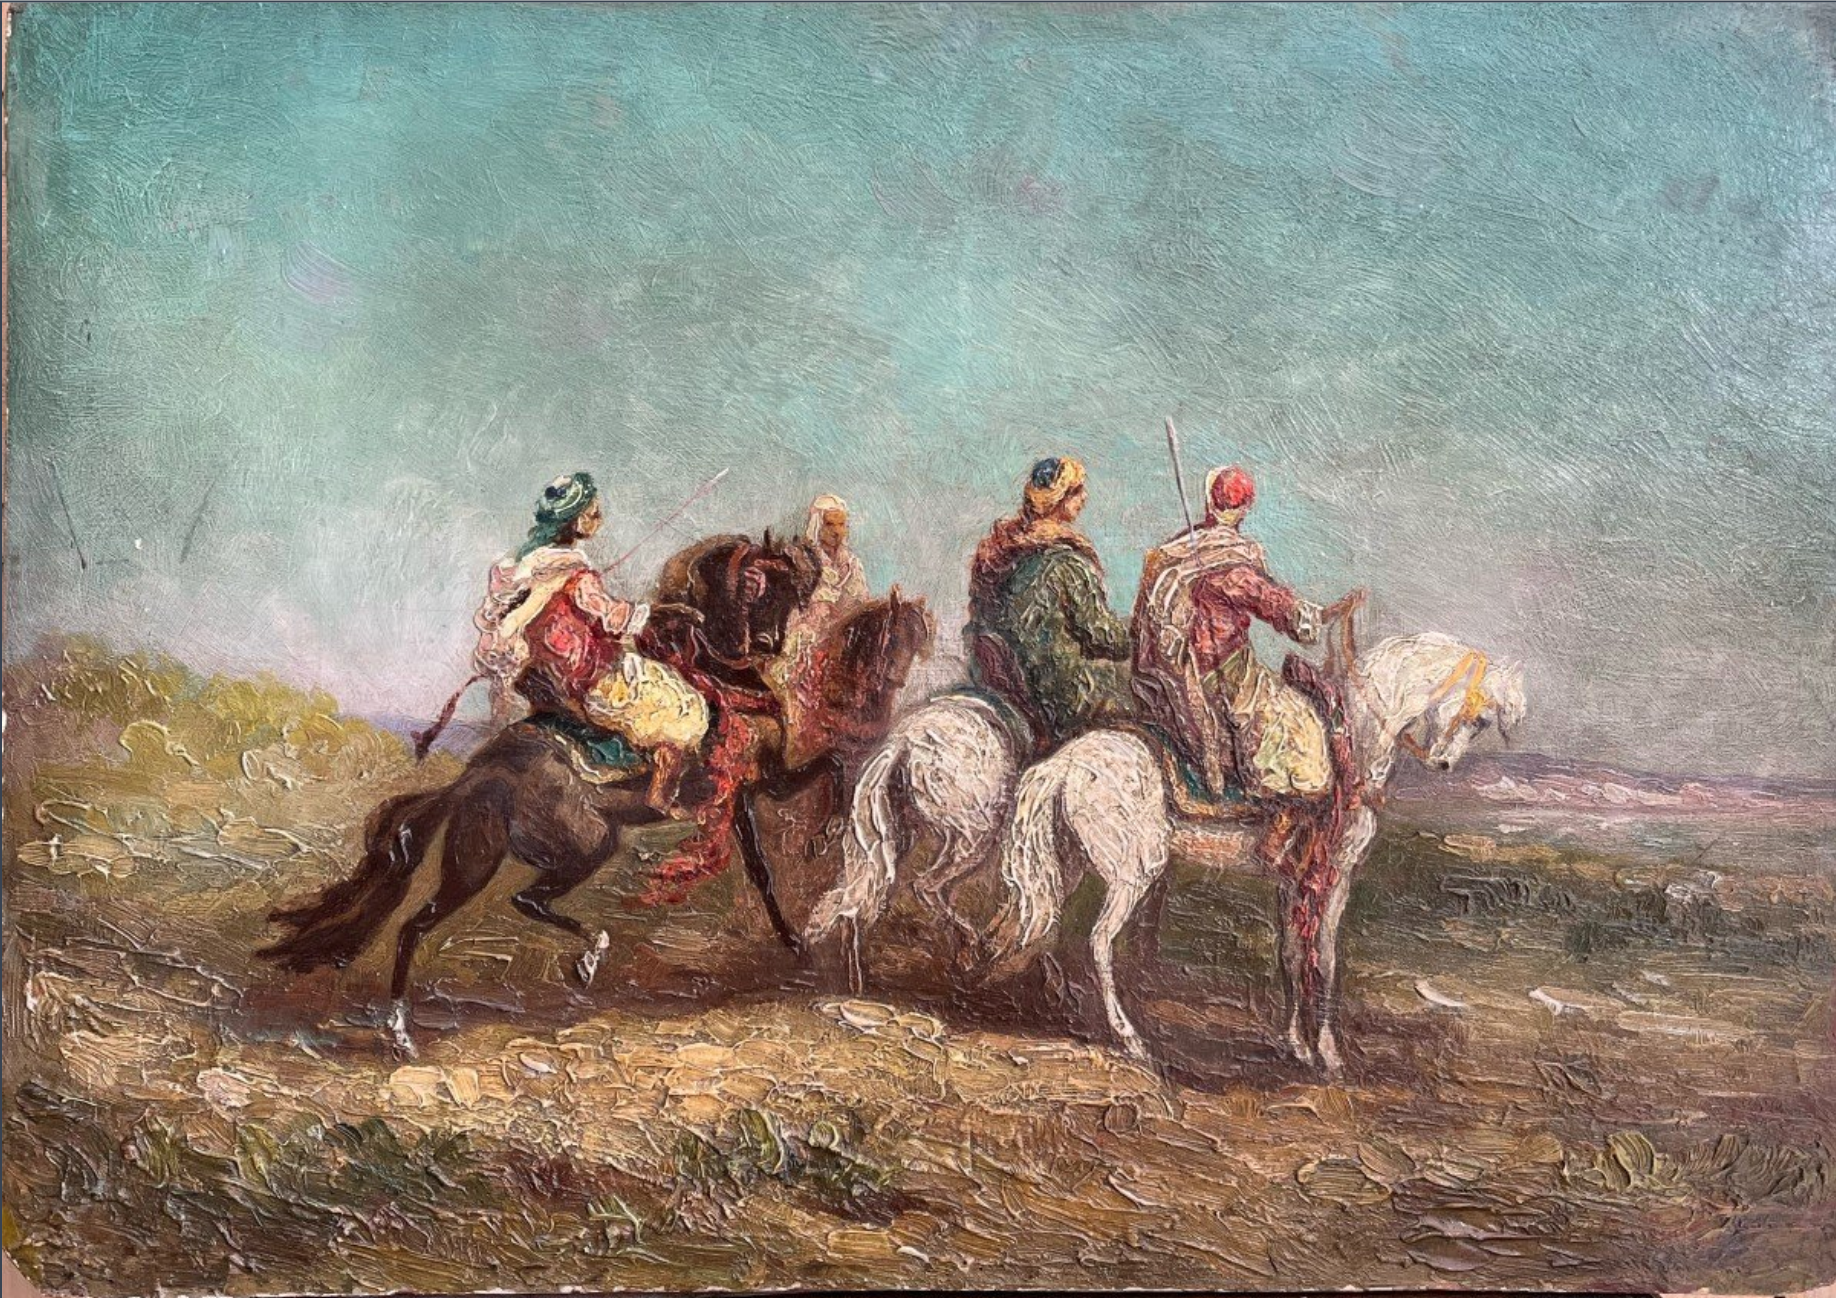 P.BARI, Cavaliers arabes, huile sur bois, XXe, 54x38cm